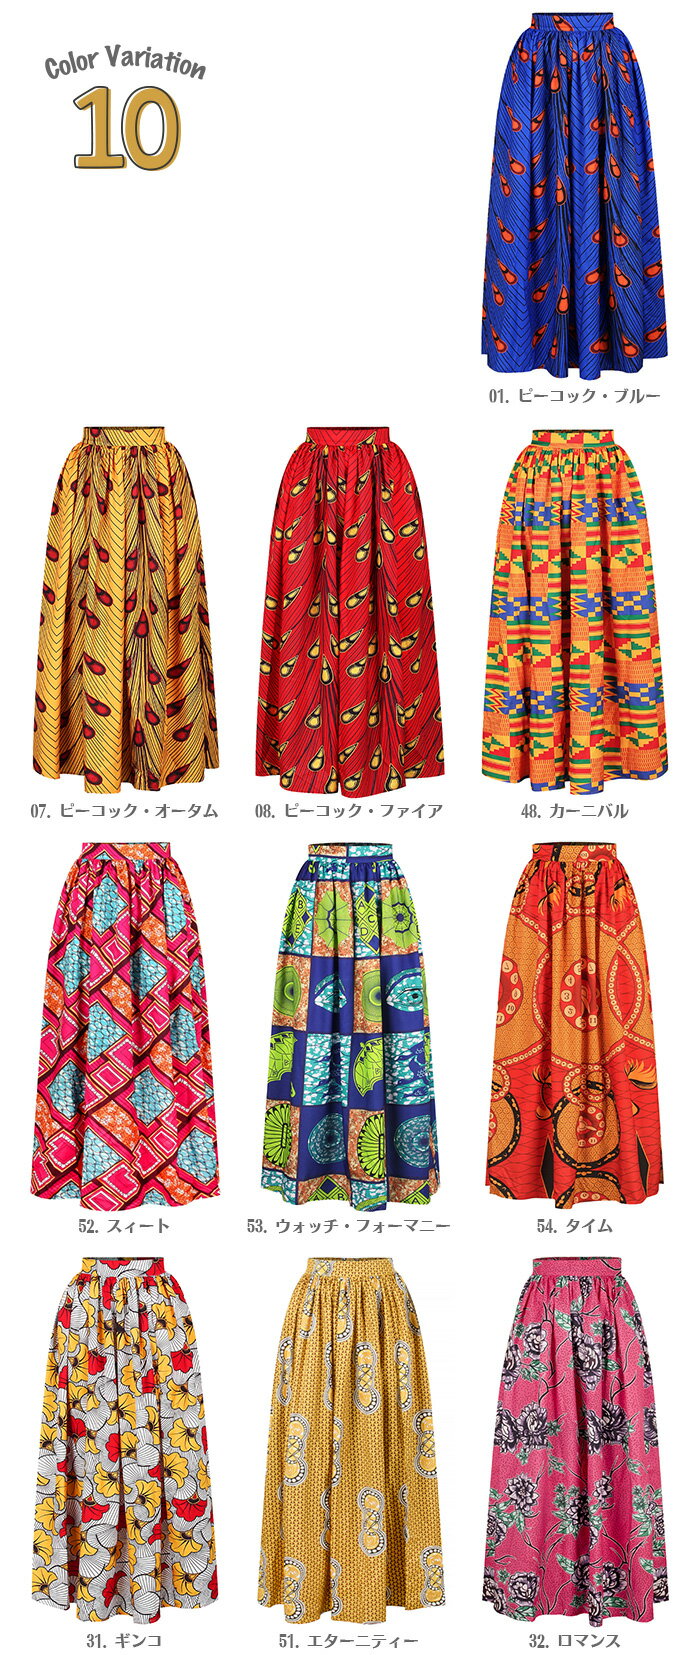 エスニック　アフリカン　民族柄 個性派　スリット入りロングスカート　全10パターン[ja4007]リゾート・ダンス衣装にも♪【ja-tn】【t-48】